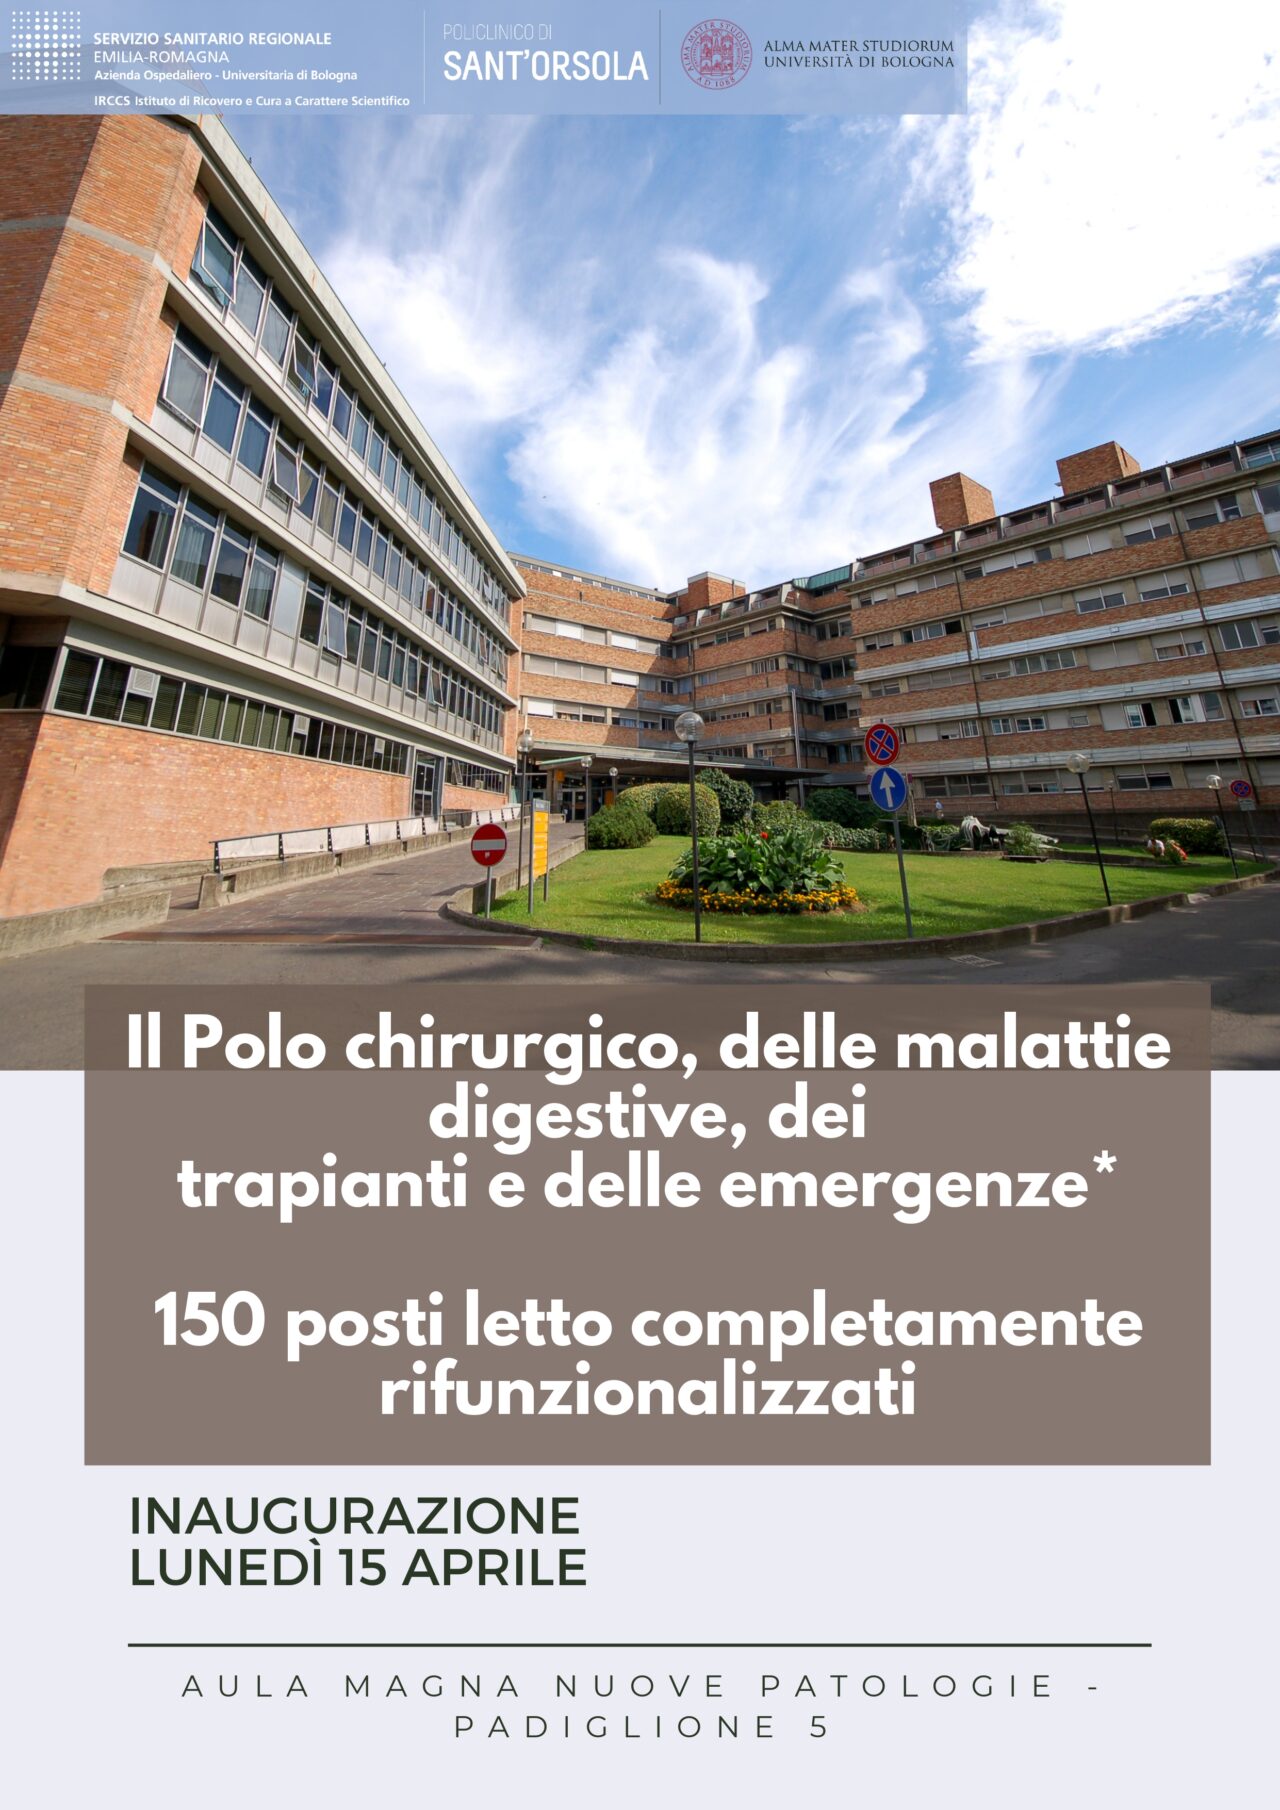 Policlinico Sant’Orsola: il 15 aprile si inaugurano 150 posti rifunzionalizzanti